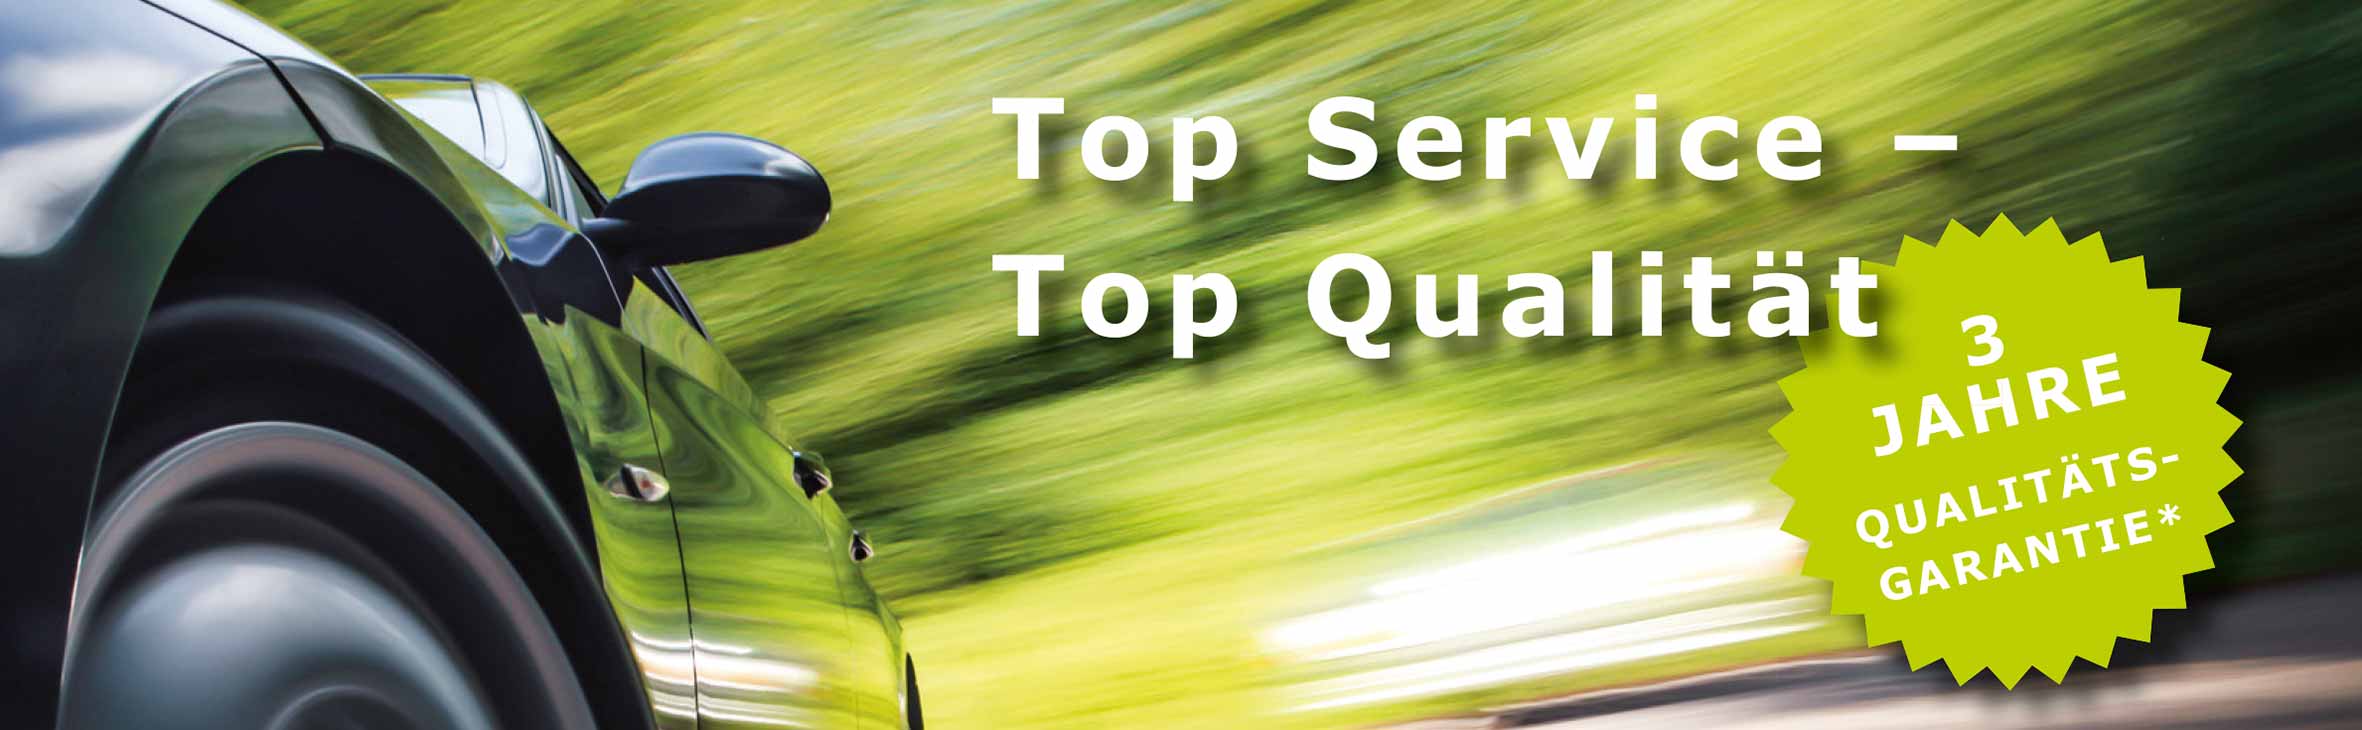 Top Service - Top Qualität - 3 Jahre Garantie